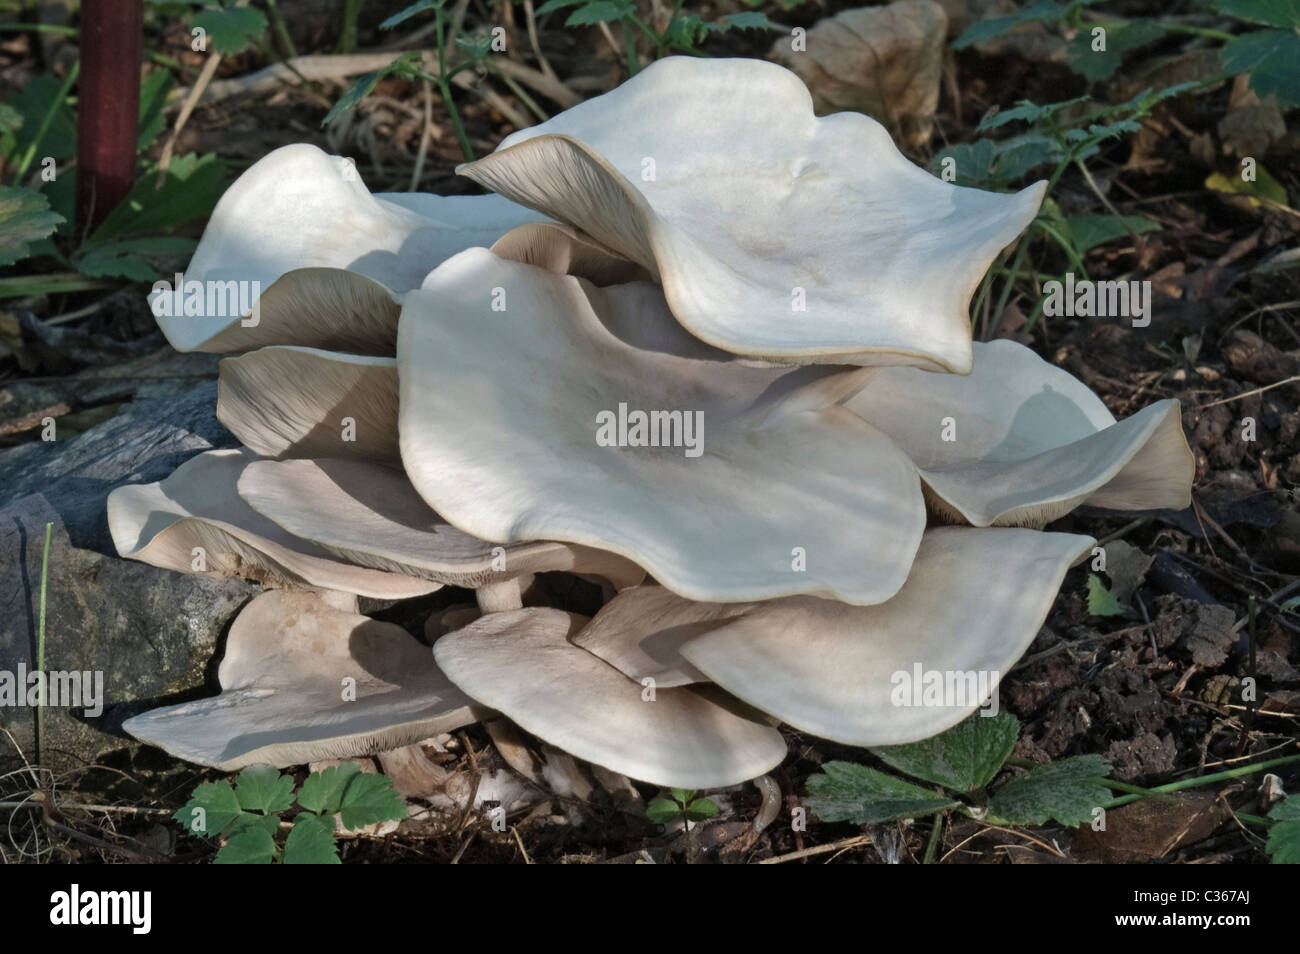 White Domecap mushroom (Lyophyllum connatum). Stock Photo